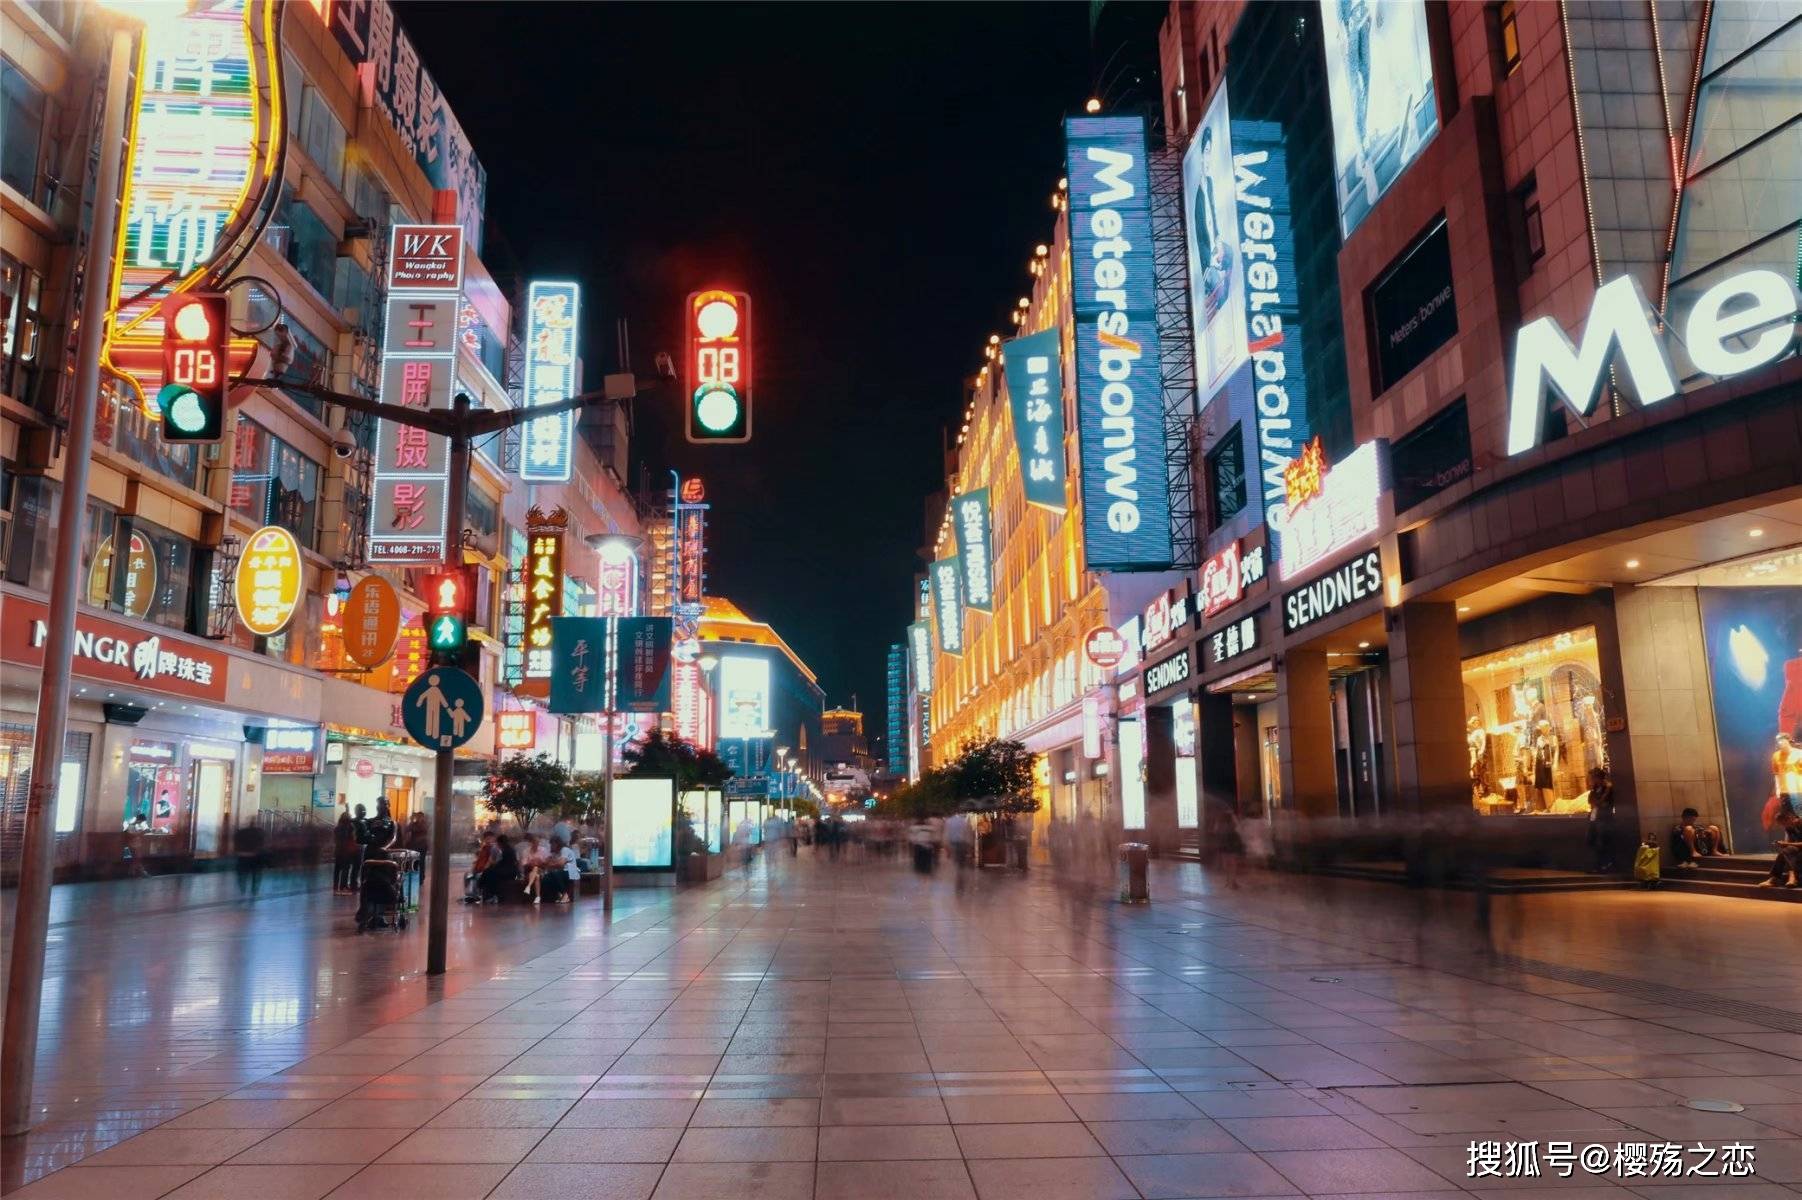 上海最有名的商业街,繁华了一百多年,被誉为中华商业第一街